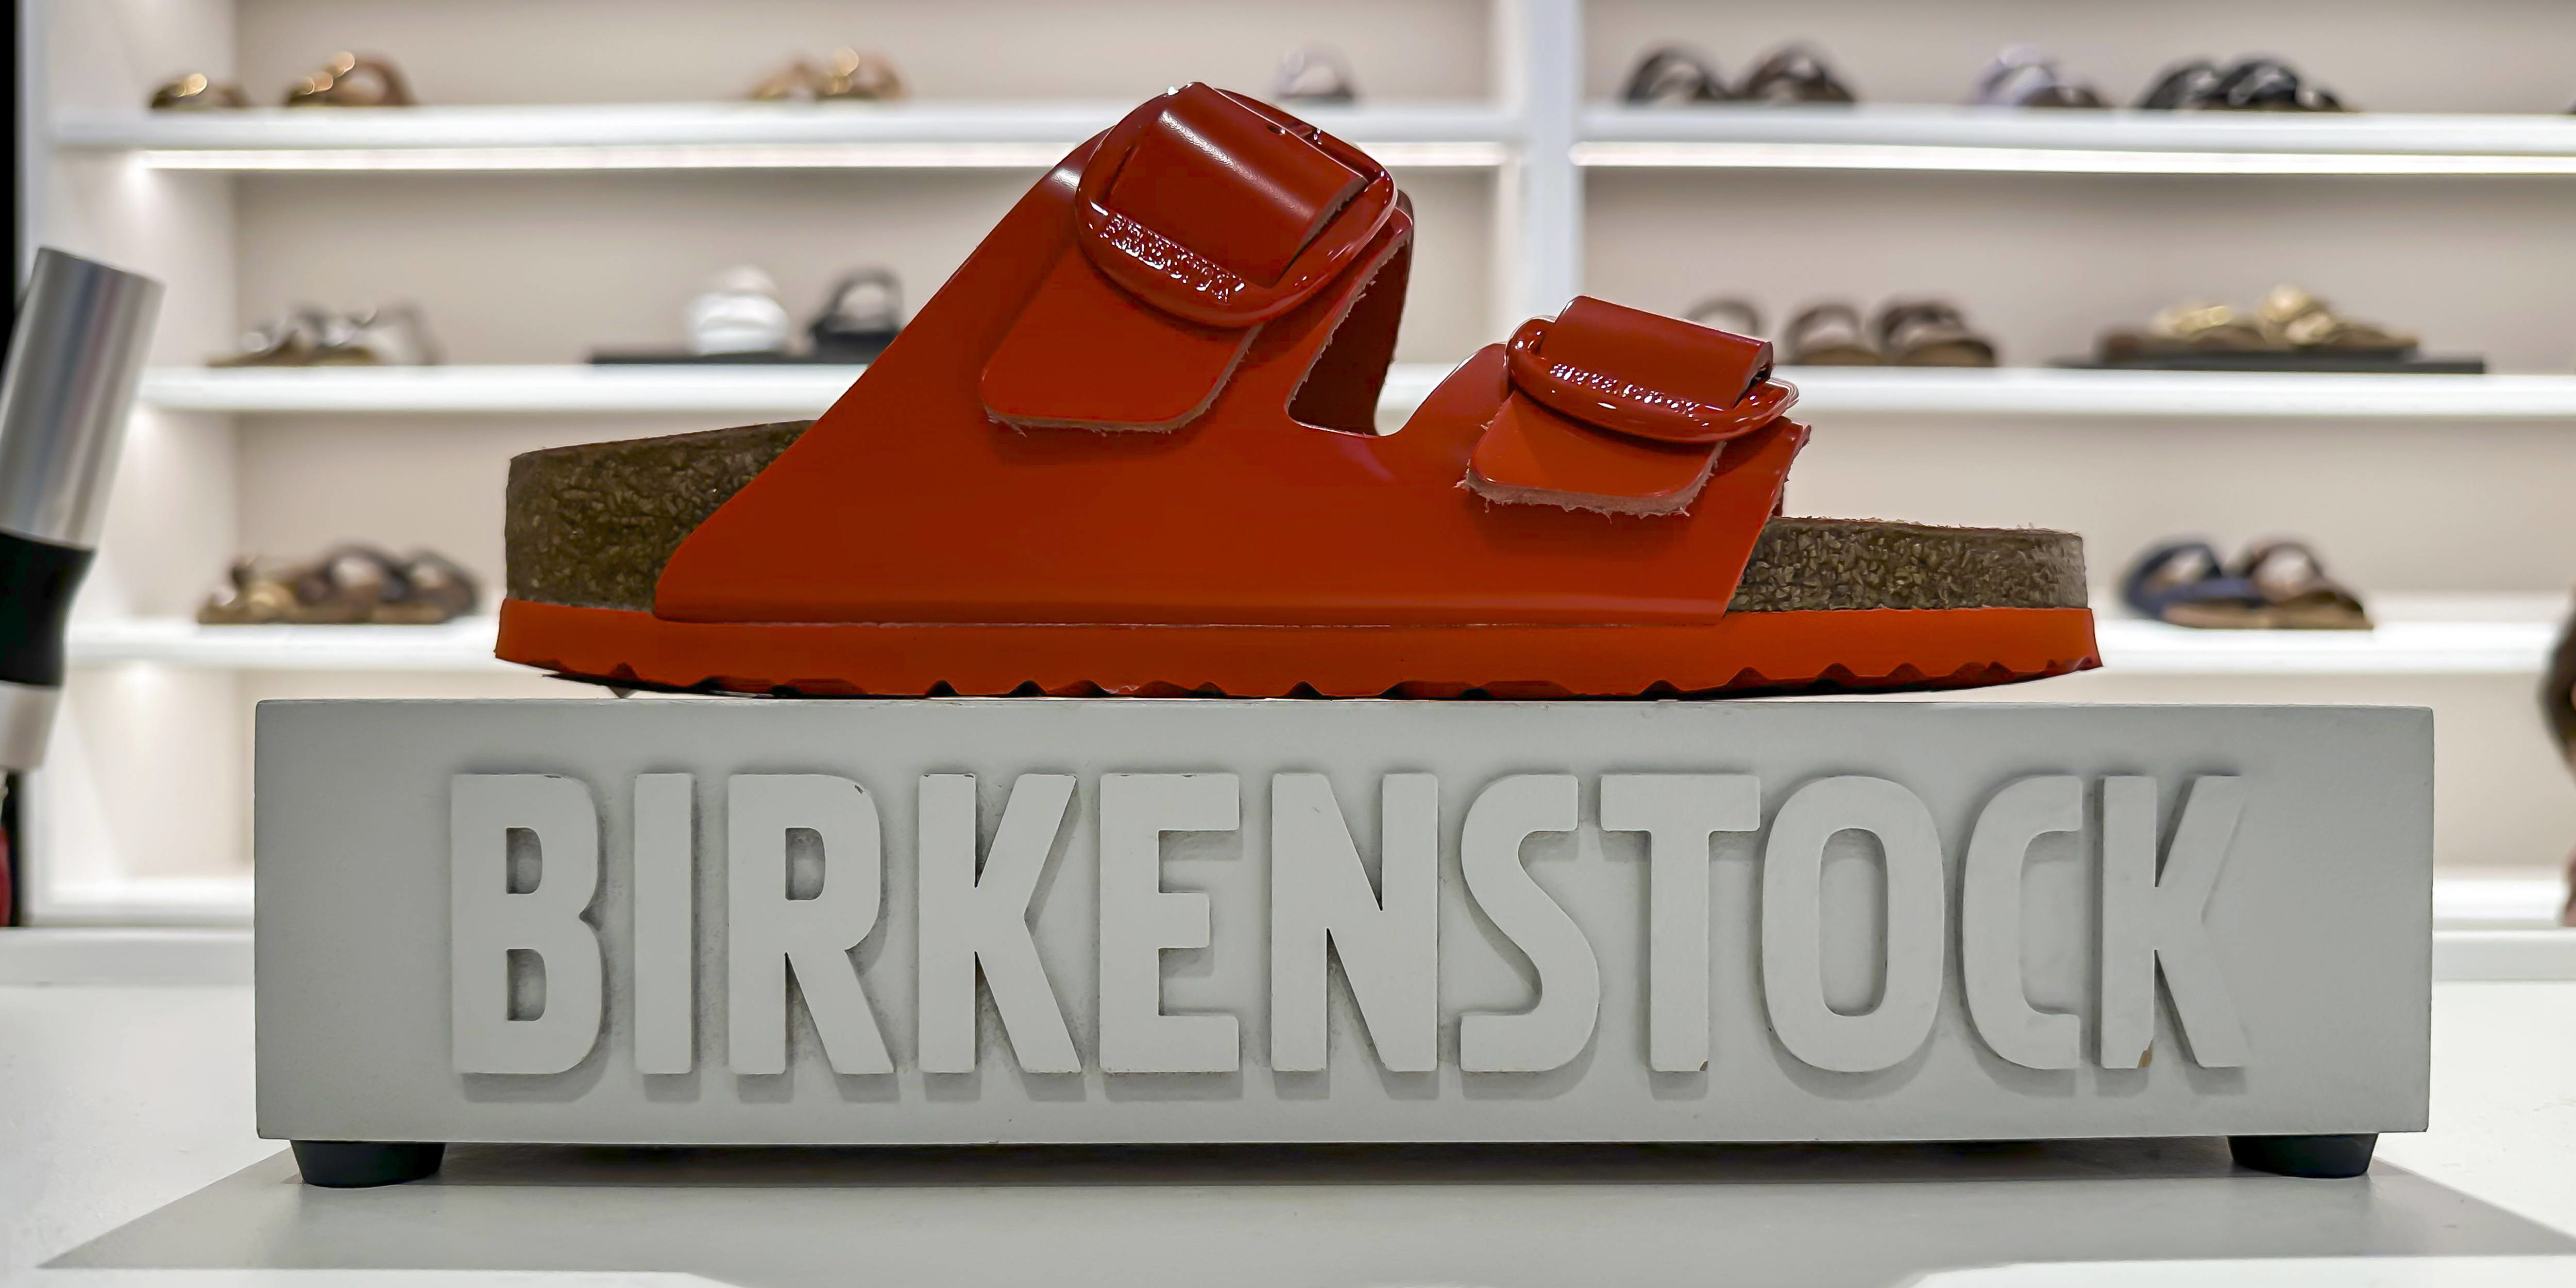 Des semelles allemandes aux tapis rouges américains : les sandales Birkenstock font leur entrée à Wall Street